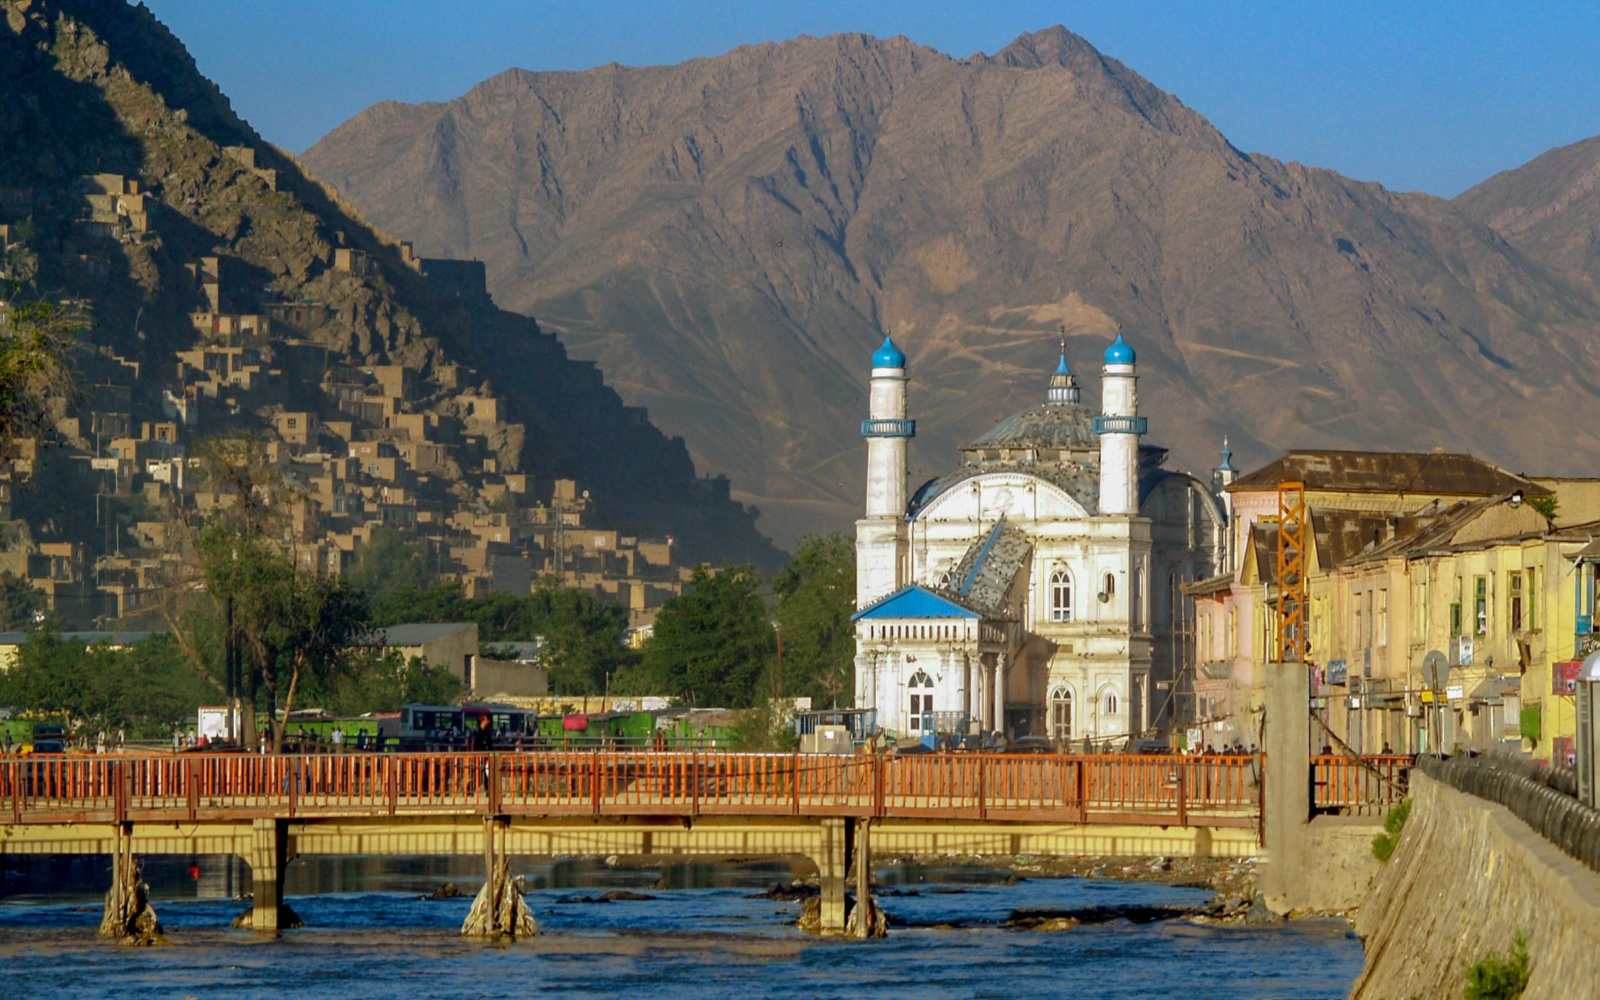 Is Afghanistan Safe? | Travel Tips & Safety Concerns